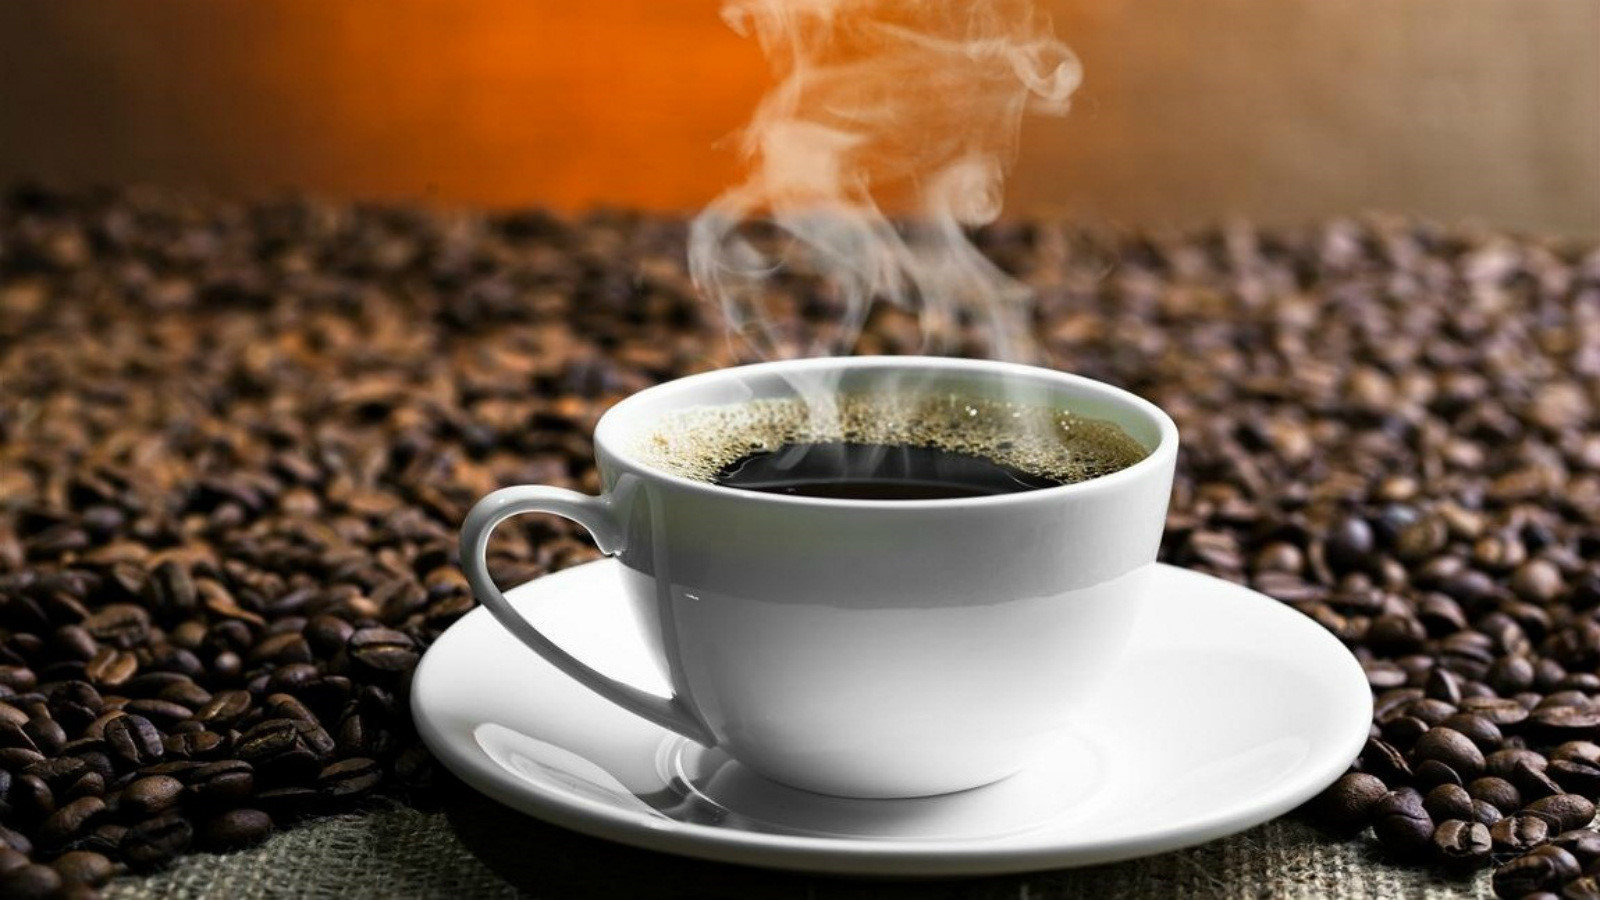   Uống cà phê có tốt không, uống bao nhiêu cốc một ngày mới tốt cho sức khỏe?  